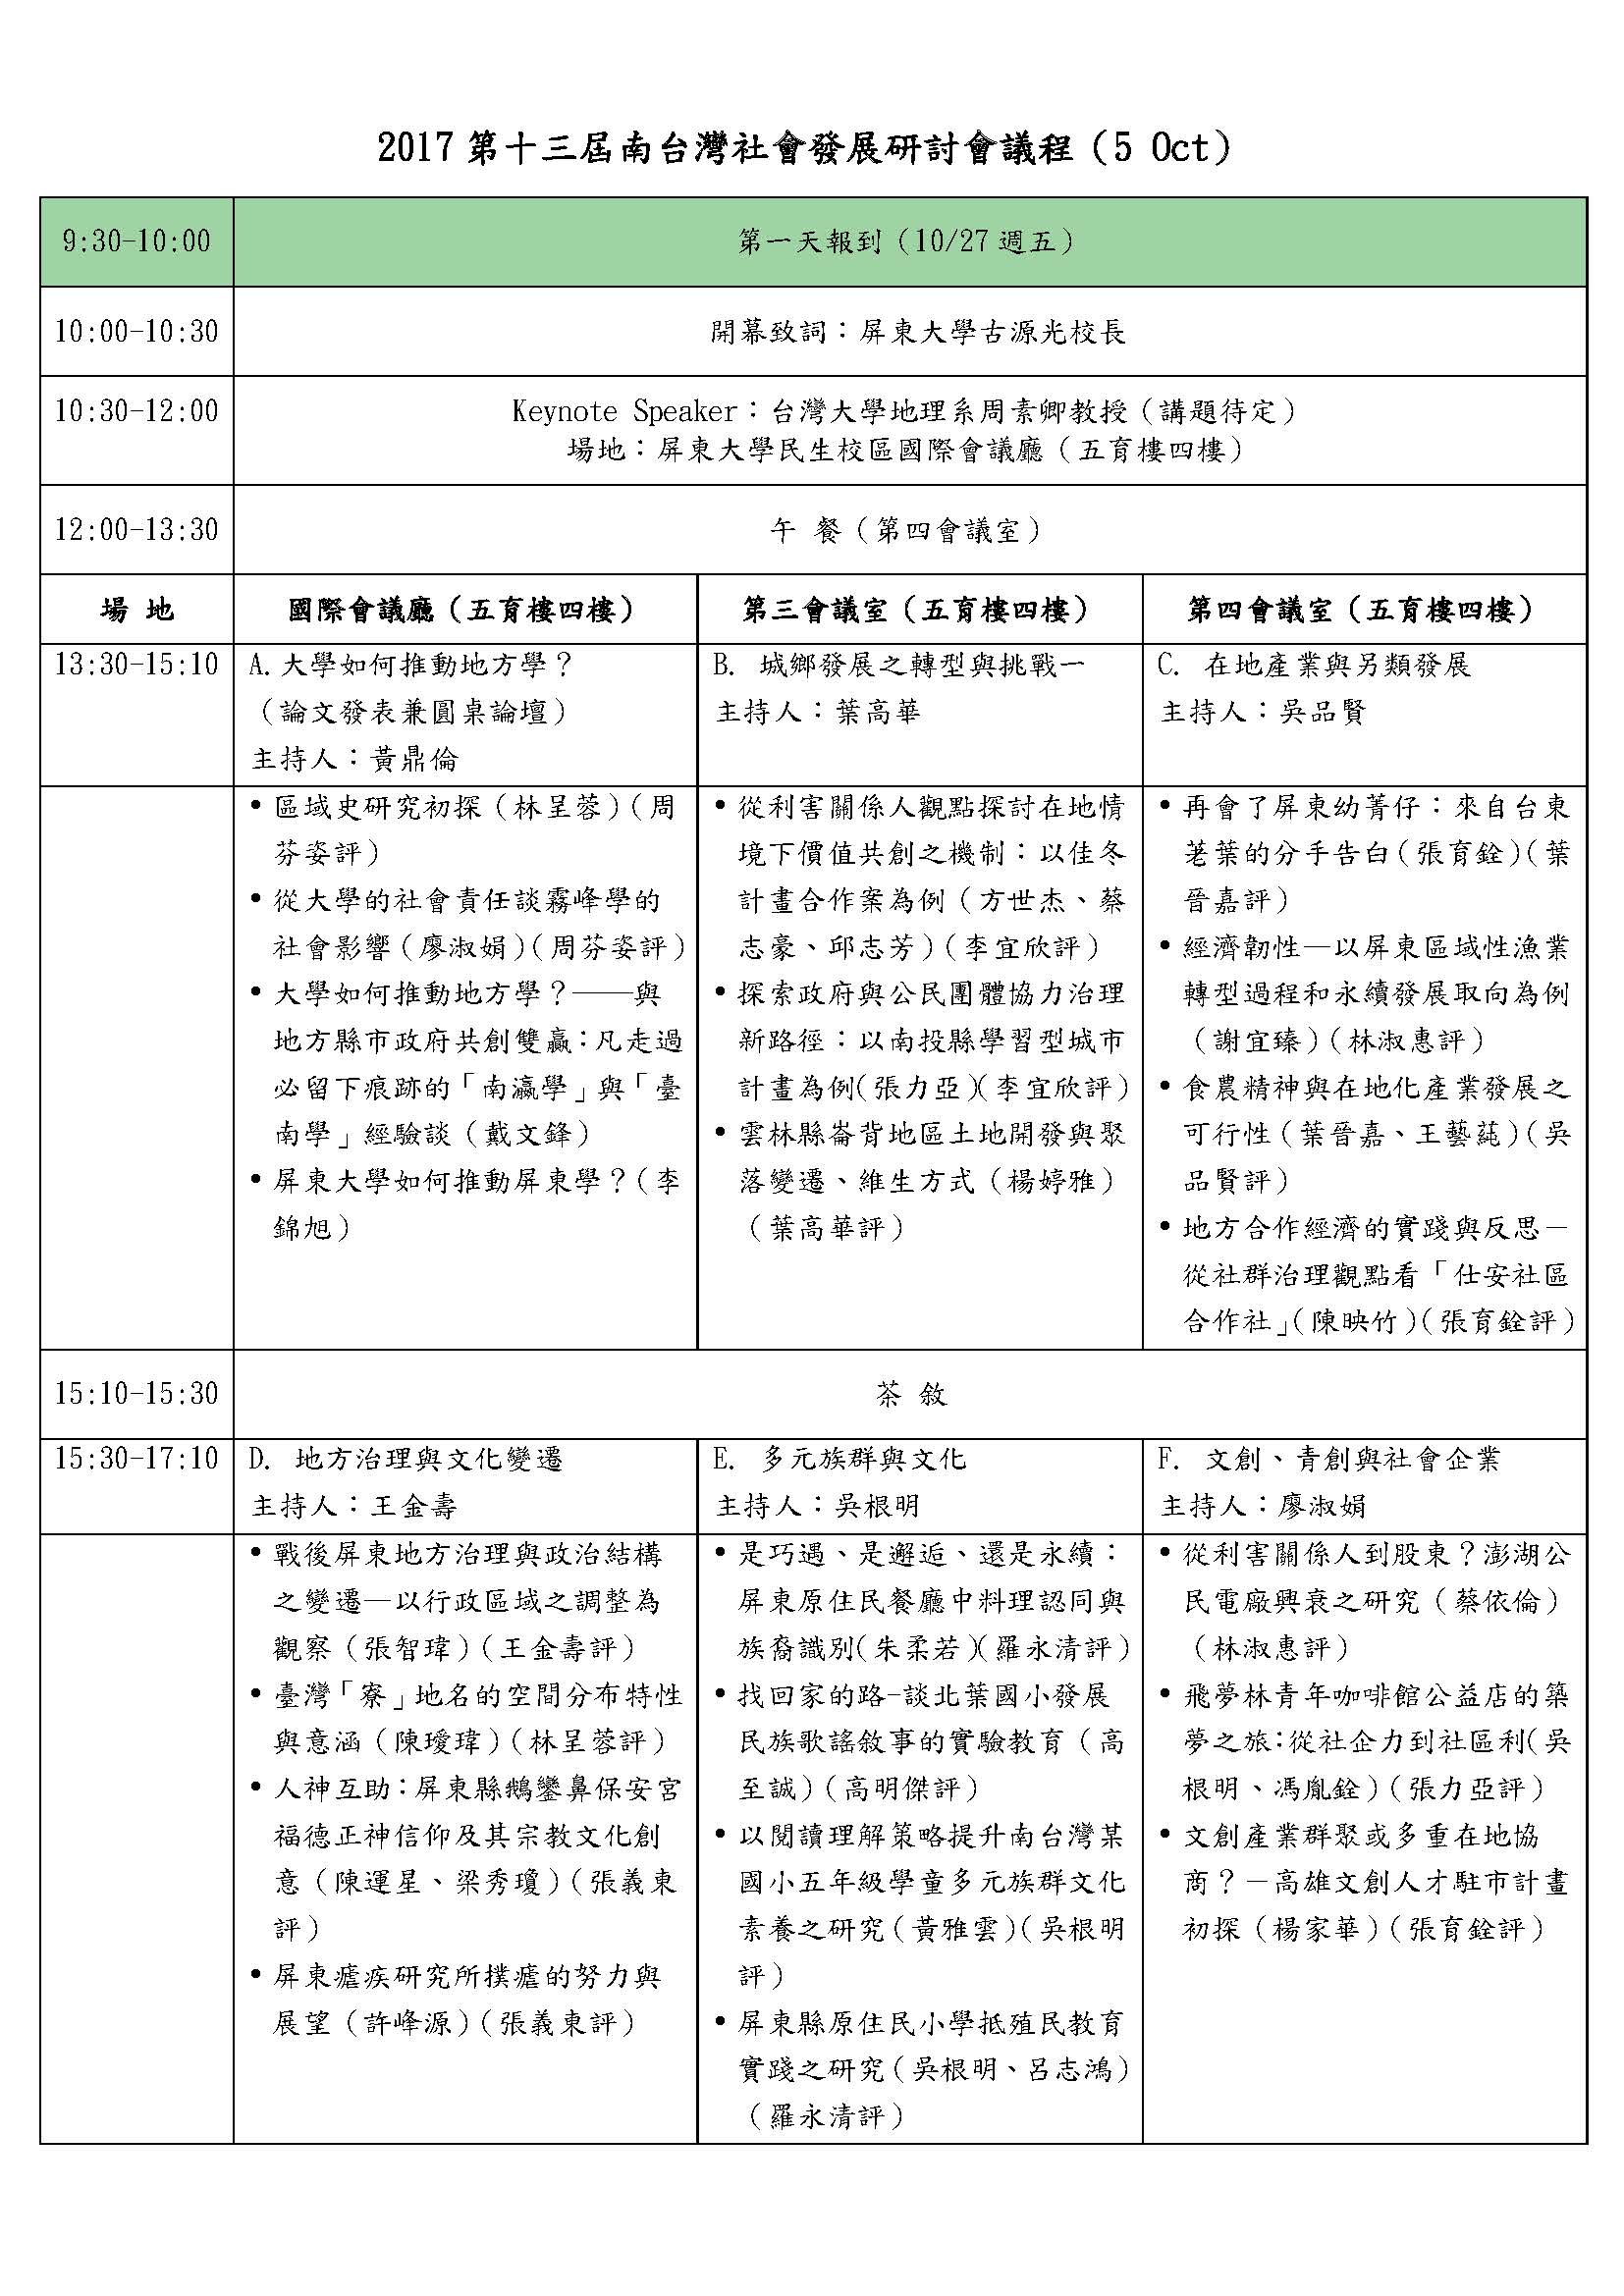 2017南台灣研討會議程 頁面 1